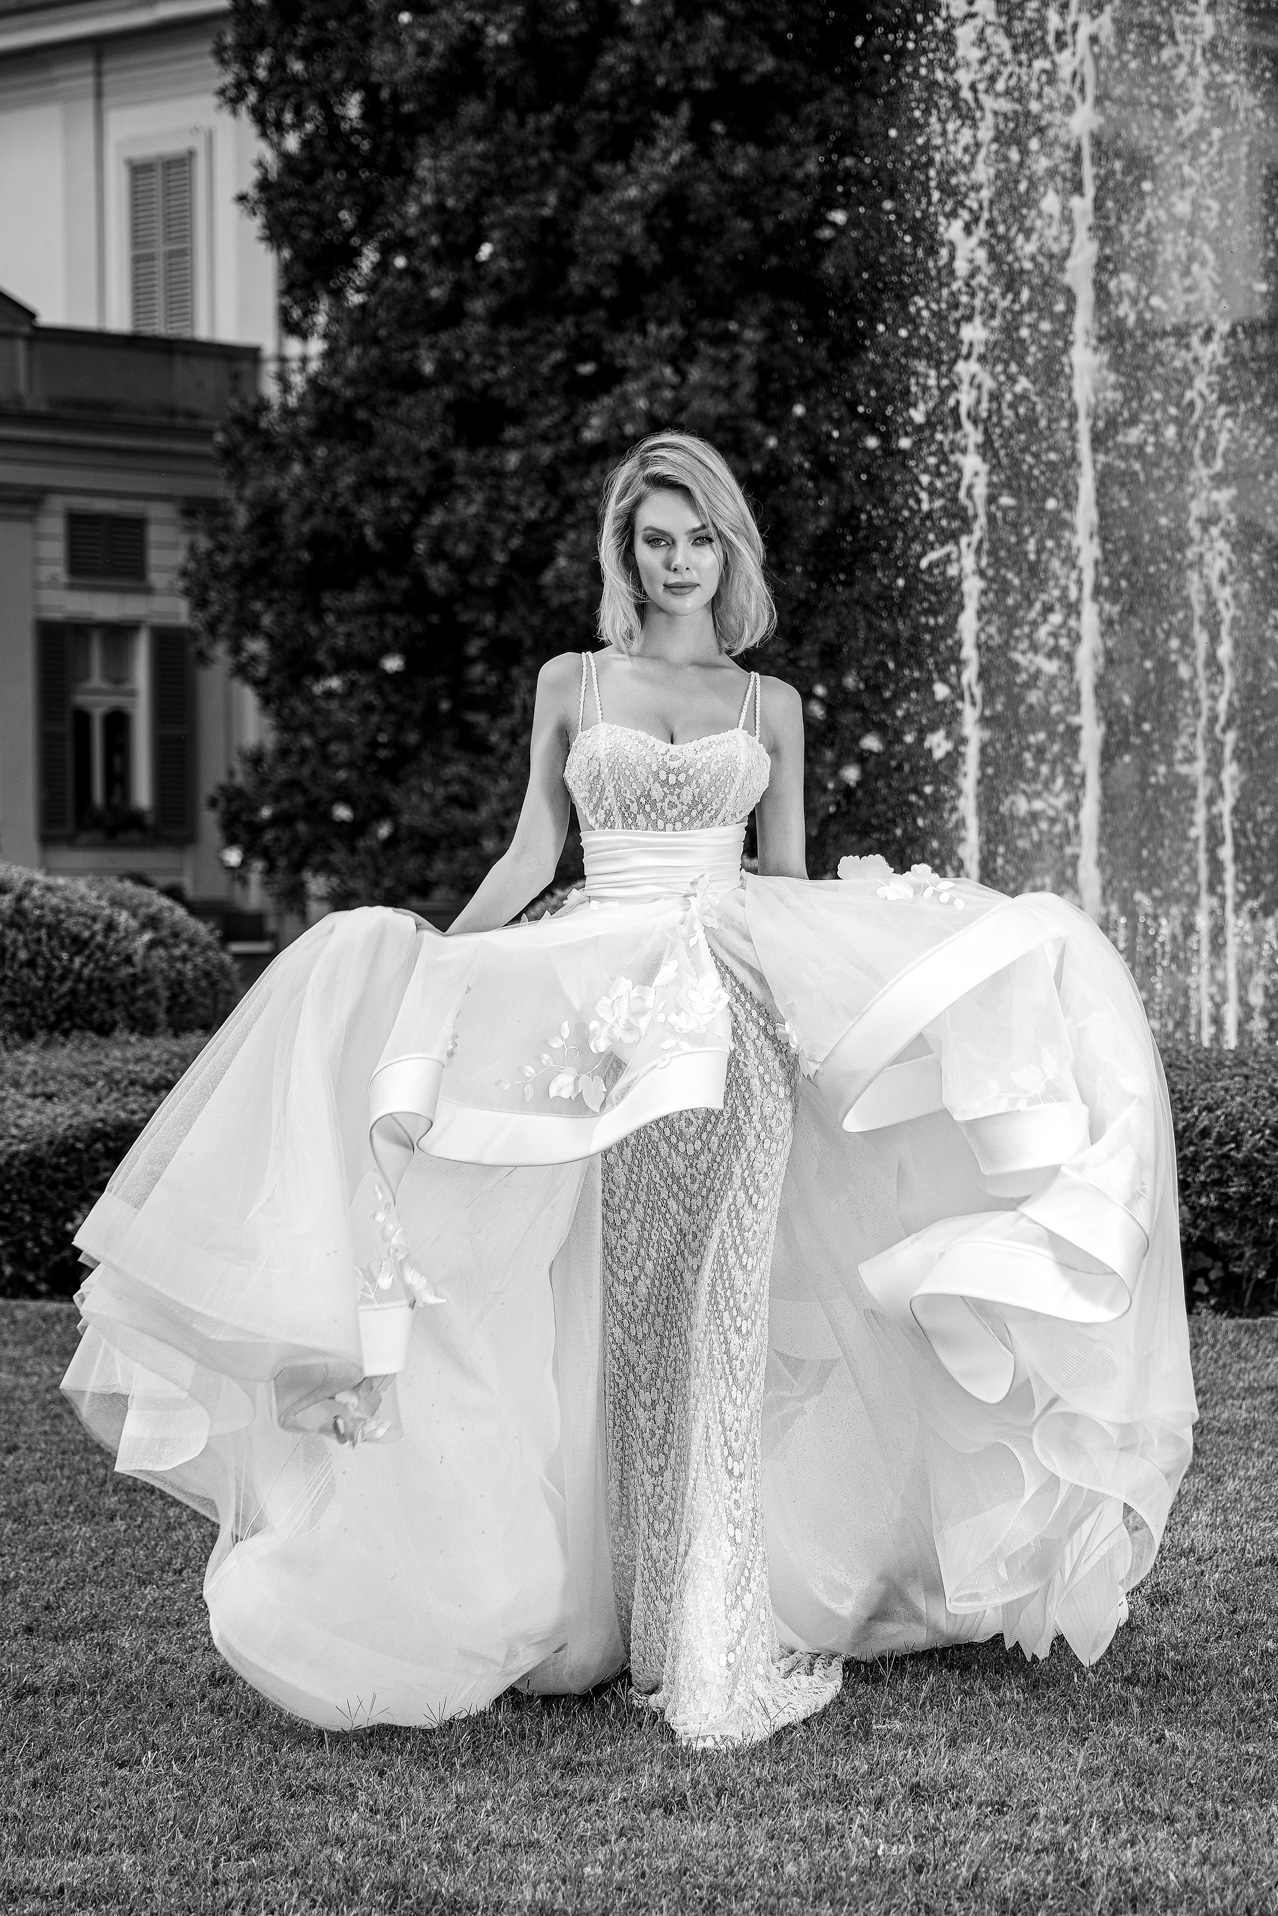 Scopri i Vestiti da Sposa 2025: Capolavori di Design Esclusivo Made in Italy - Per una Sposa Unica e Particolare con un Look Nuziale Indimenticabile